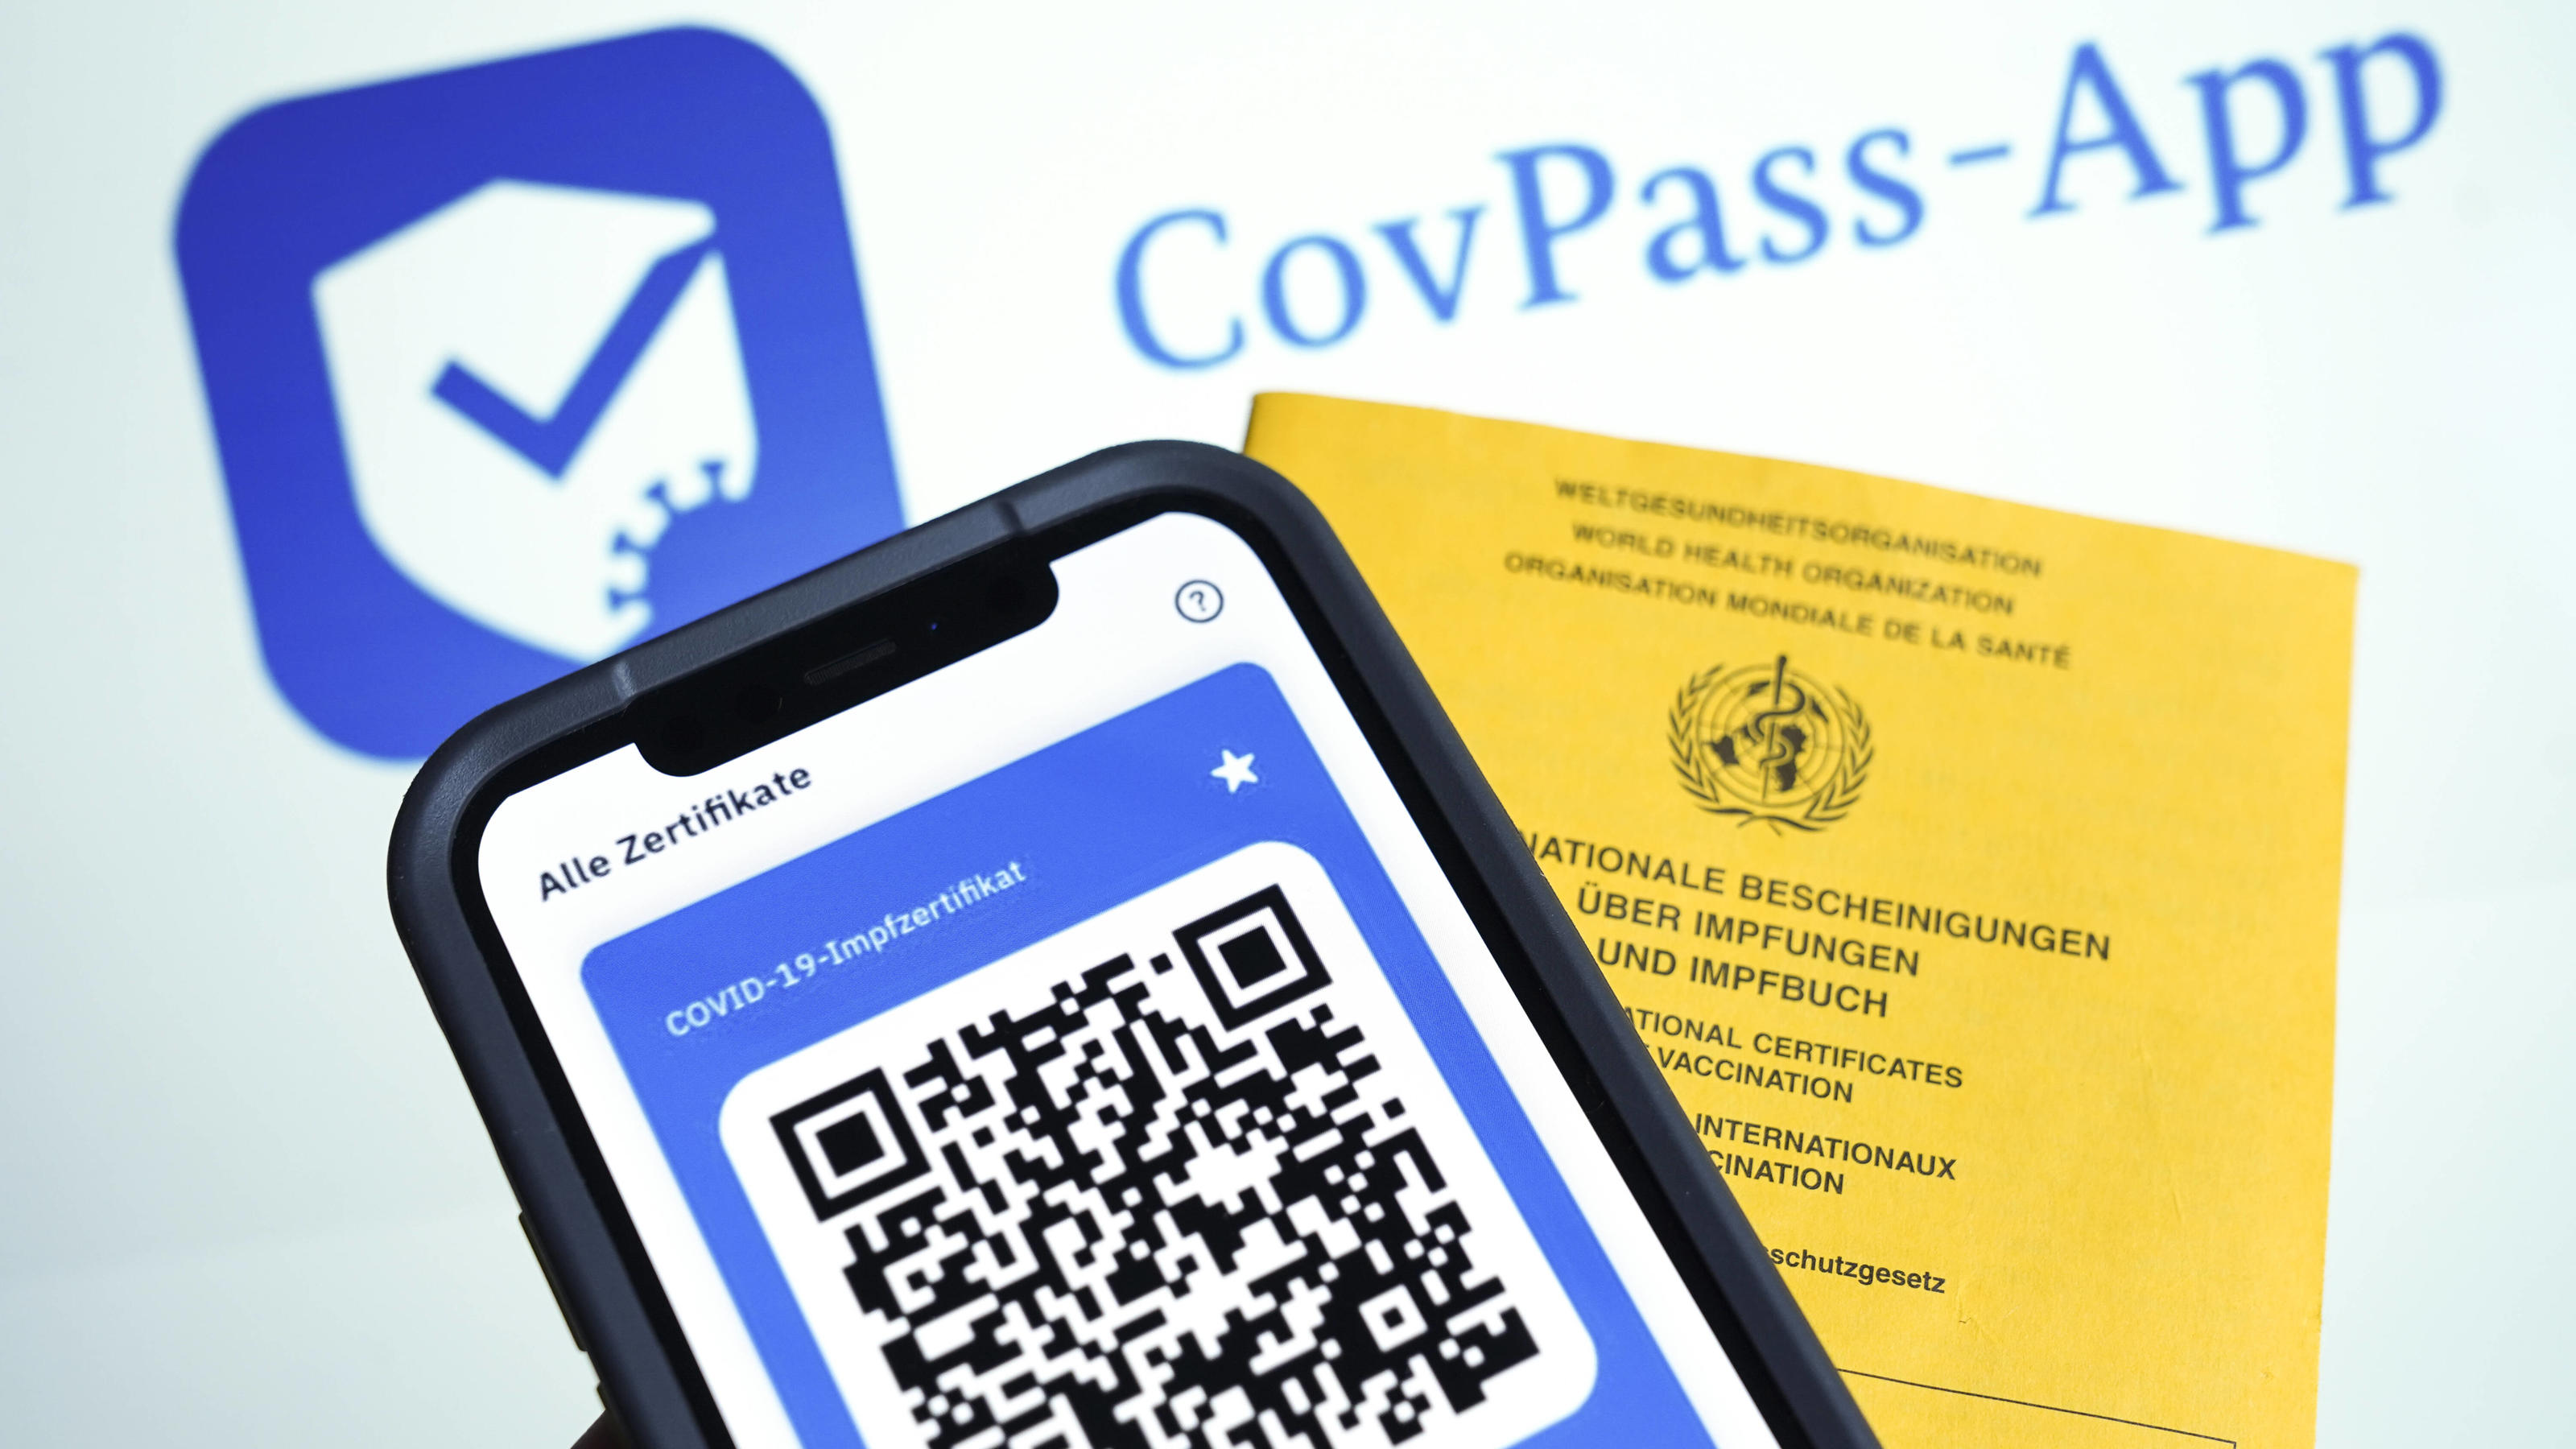 CovPass-App Digitaler Impfnachweis Symbolfoto der CovPass-App des neuen europaweiten Digitalen Impfnachweis der sowohl ueber das Handy per App, als auch in ausgedruckter Form mitgefuehrt werden kann. Die Verifizierung erfolgt ueber den per